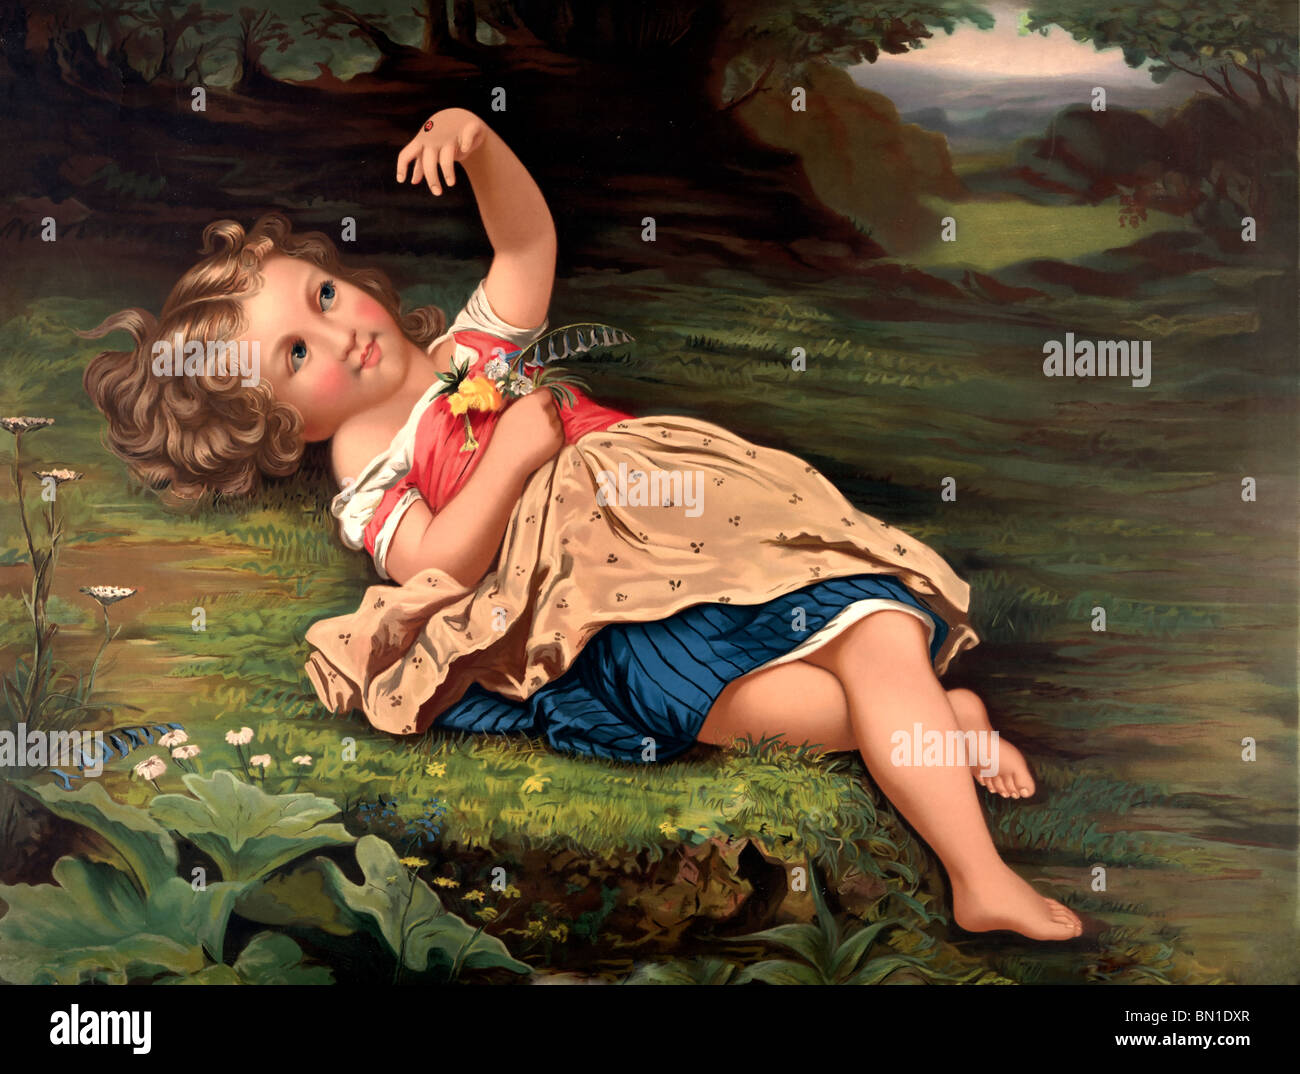 Lady bug, lady bug, Fly away ! Jeune fille étendue sur le sol avec lady bug sur sa main - peinture 1872 Banque D'Images